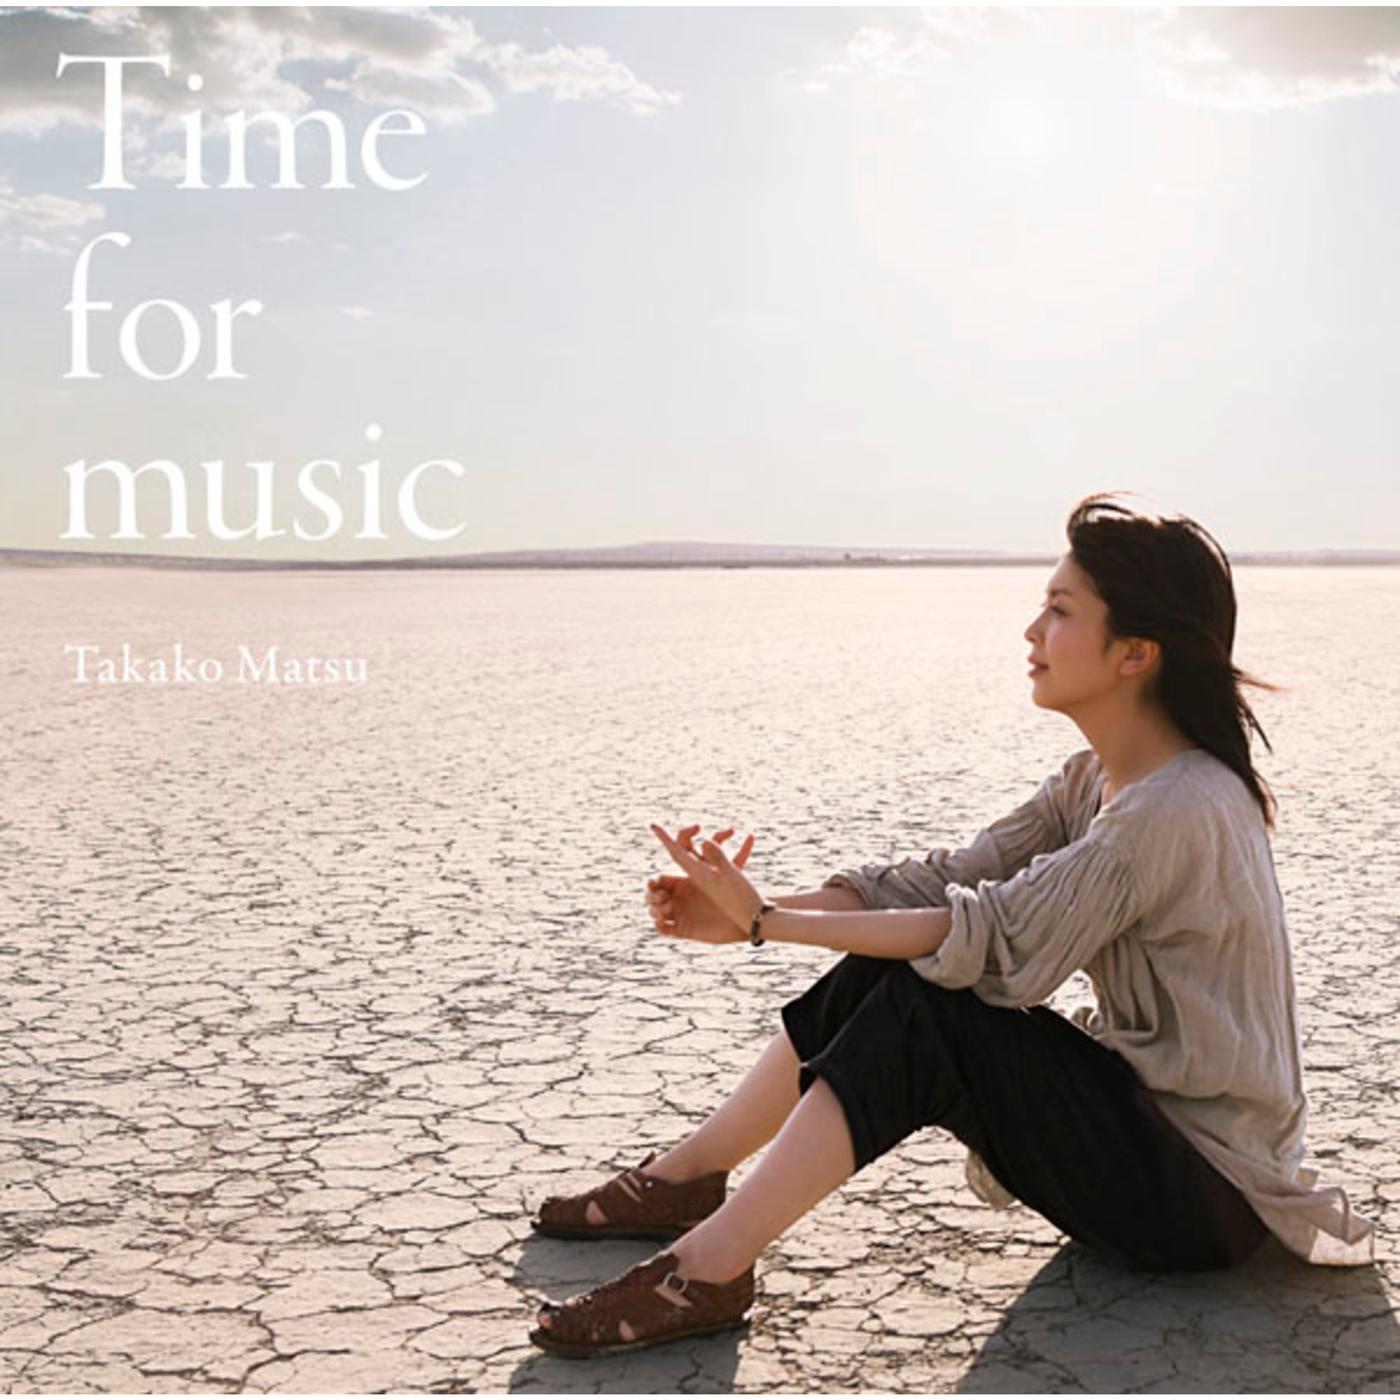 松たか子 - Time for music